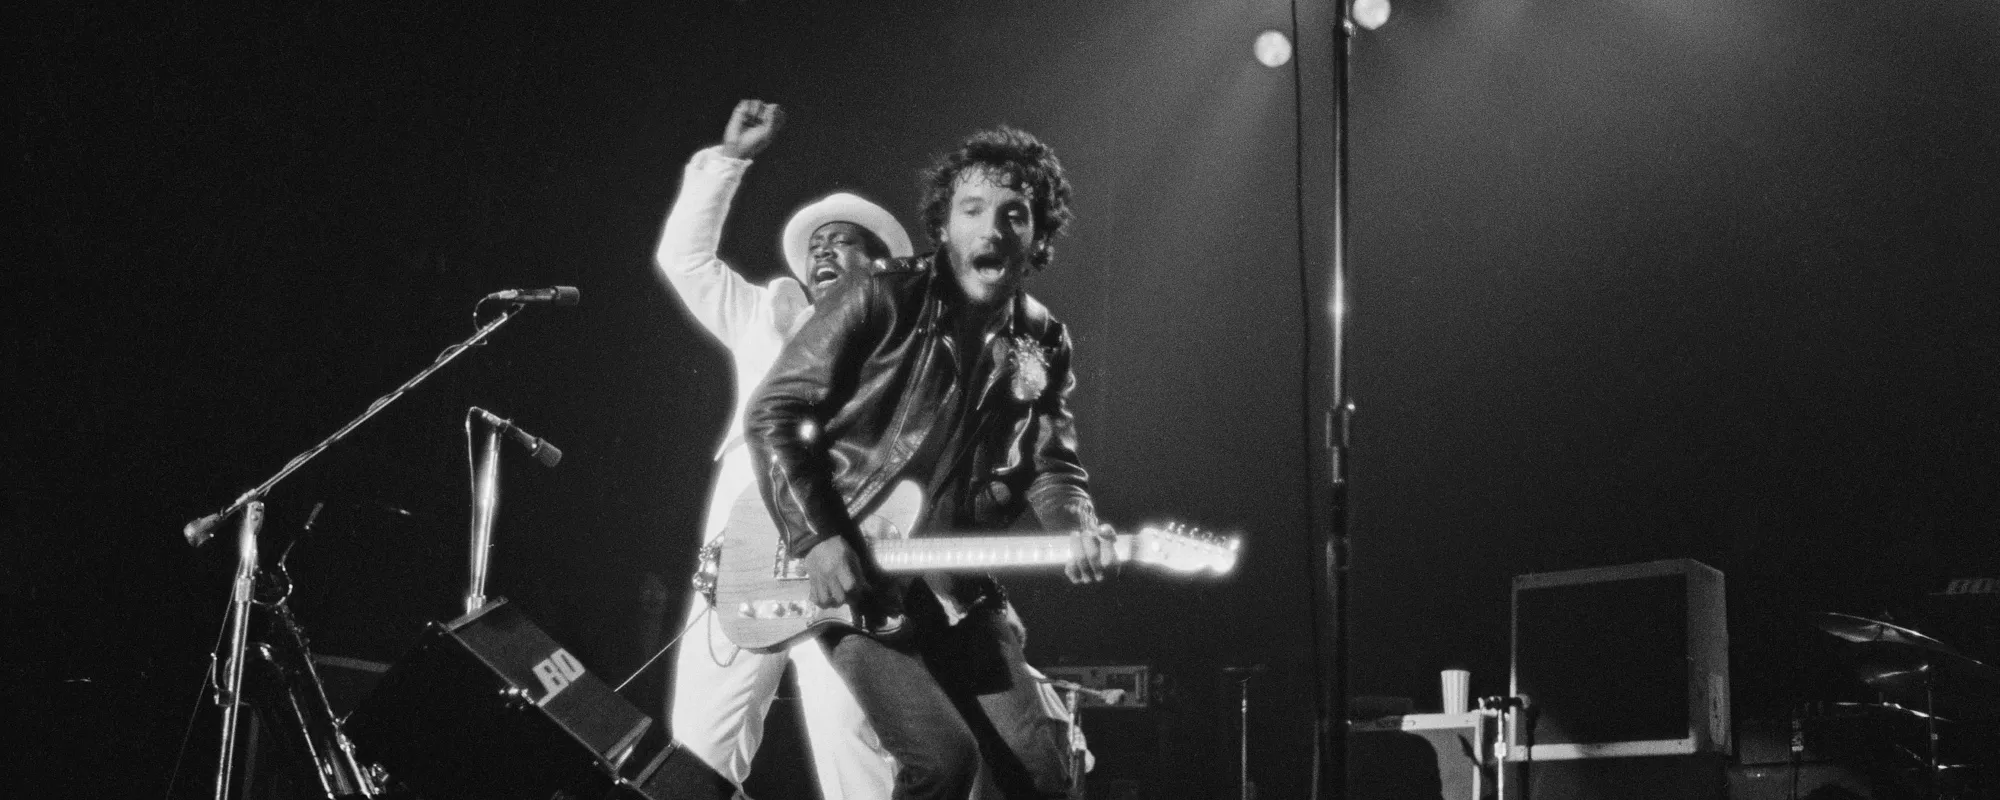 Ranking the Top 5 Songs on Bruce Springsteen’s Debut Album ‘Greetings from Asbury Park, N.J.’